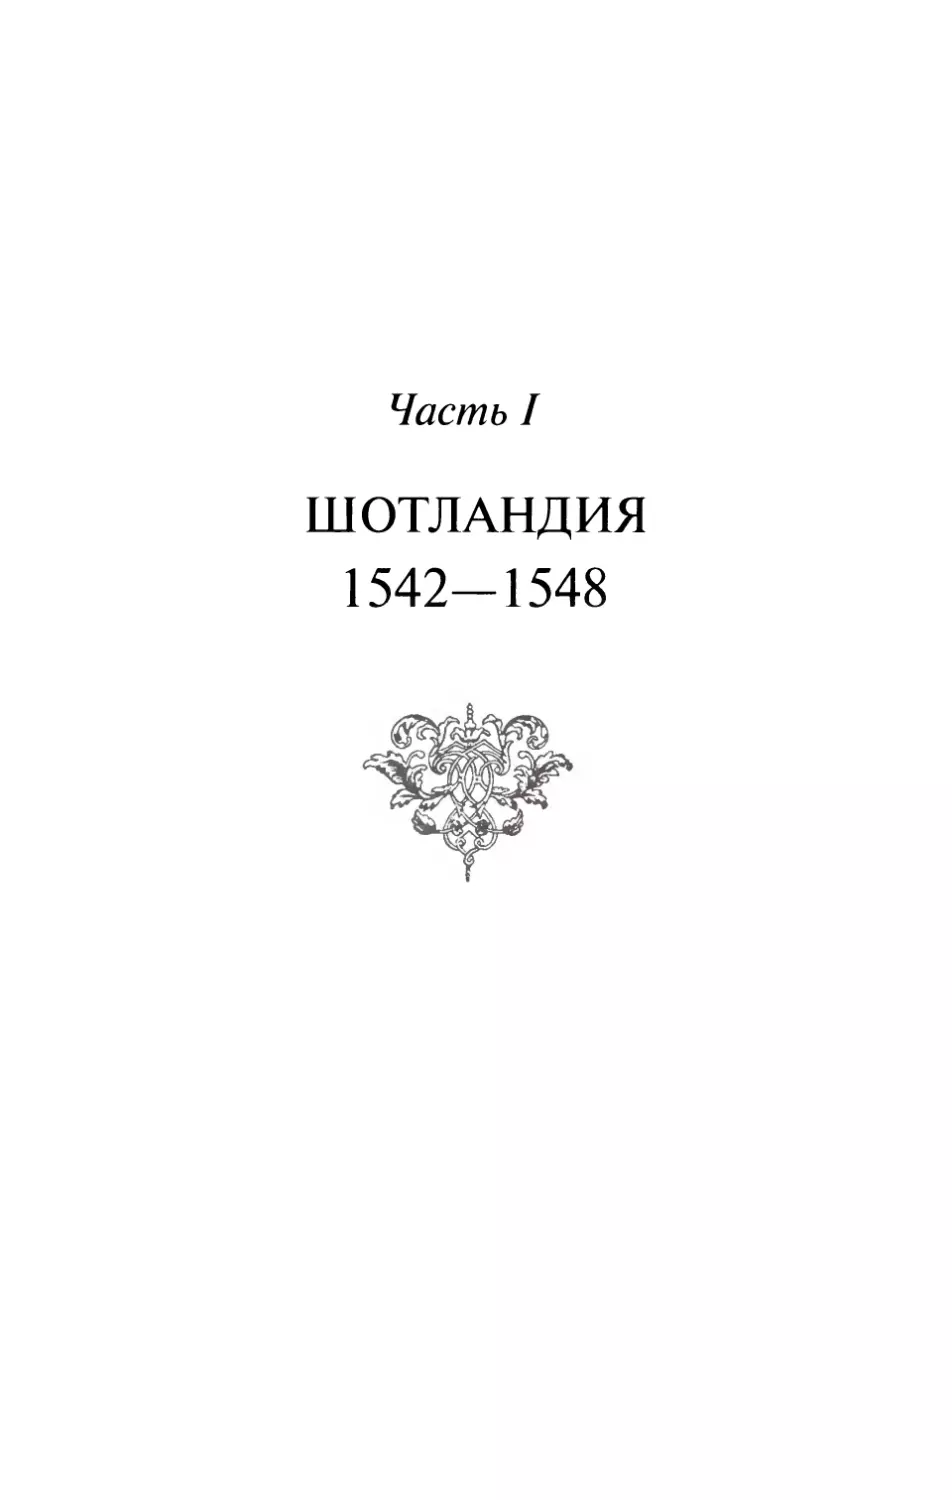 Часть I. ШОТЛАНДИЯ. 1542-1548